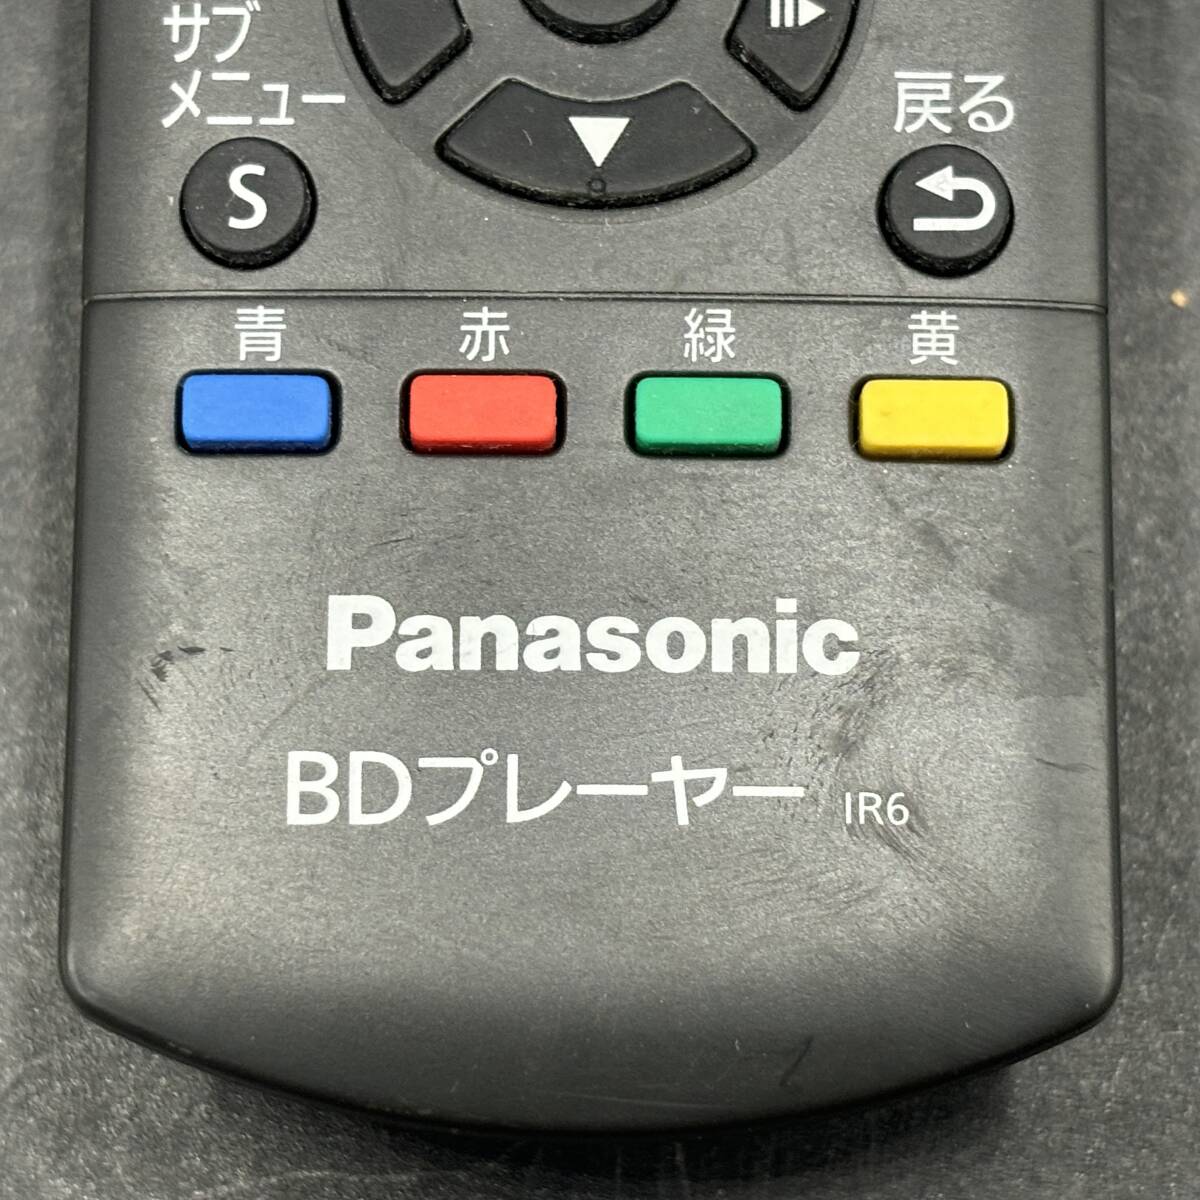 Panasonic/ Panasonic Blue-ray плеер для дистанционный пульт инфракрасные лучи люминесценция подтверждено N2QAYB000735